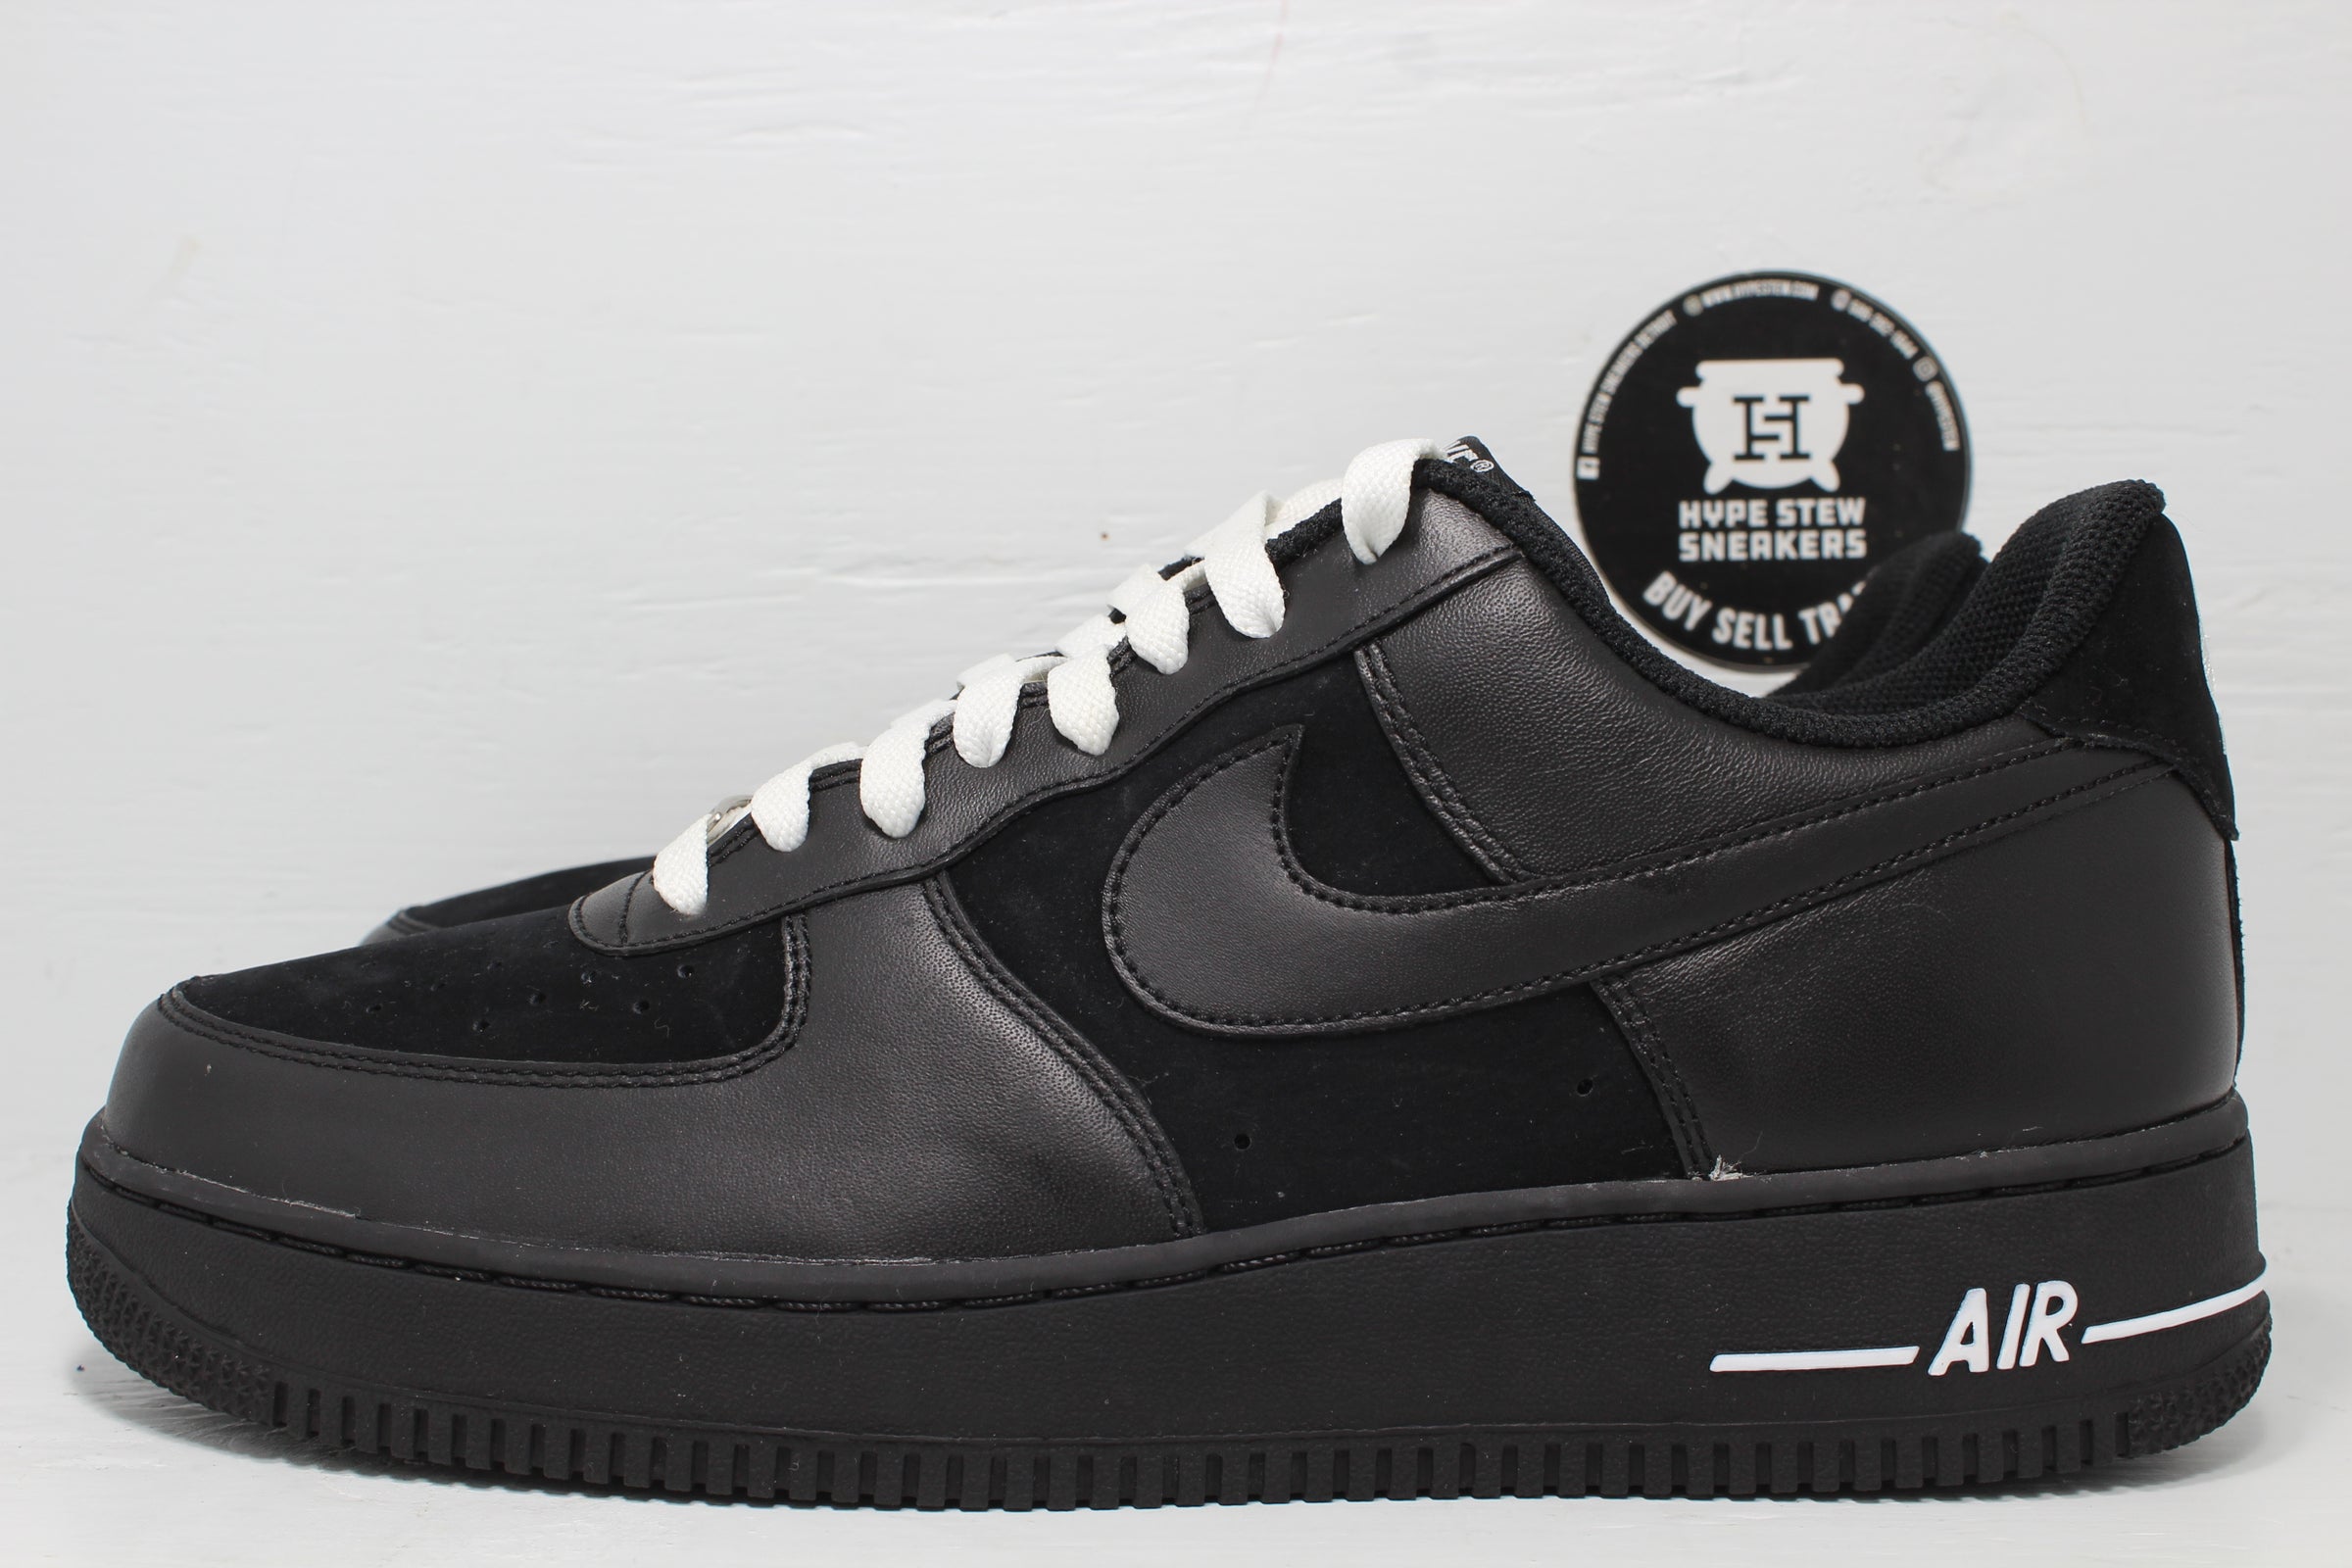 Niet meer geldig verkwistend terugtrekken Nike Air Force 1 '07 Black Suede | Hype Stew Sneakers Detroit